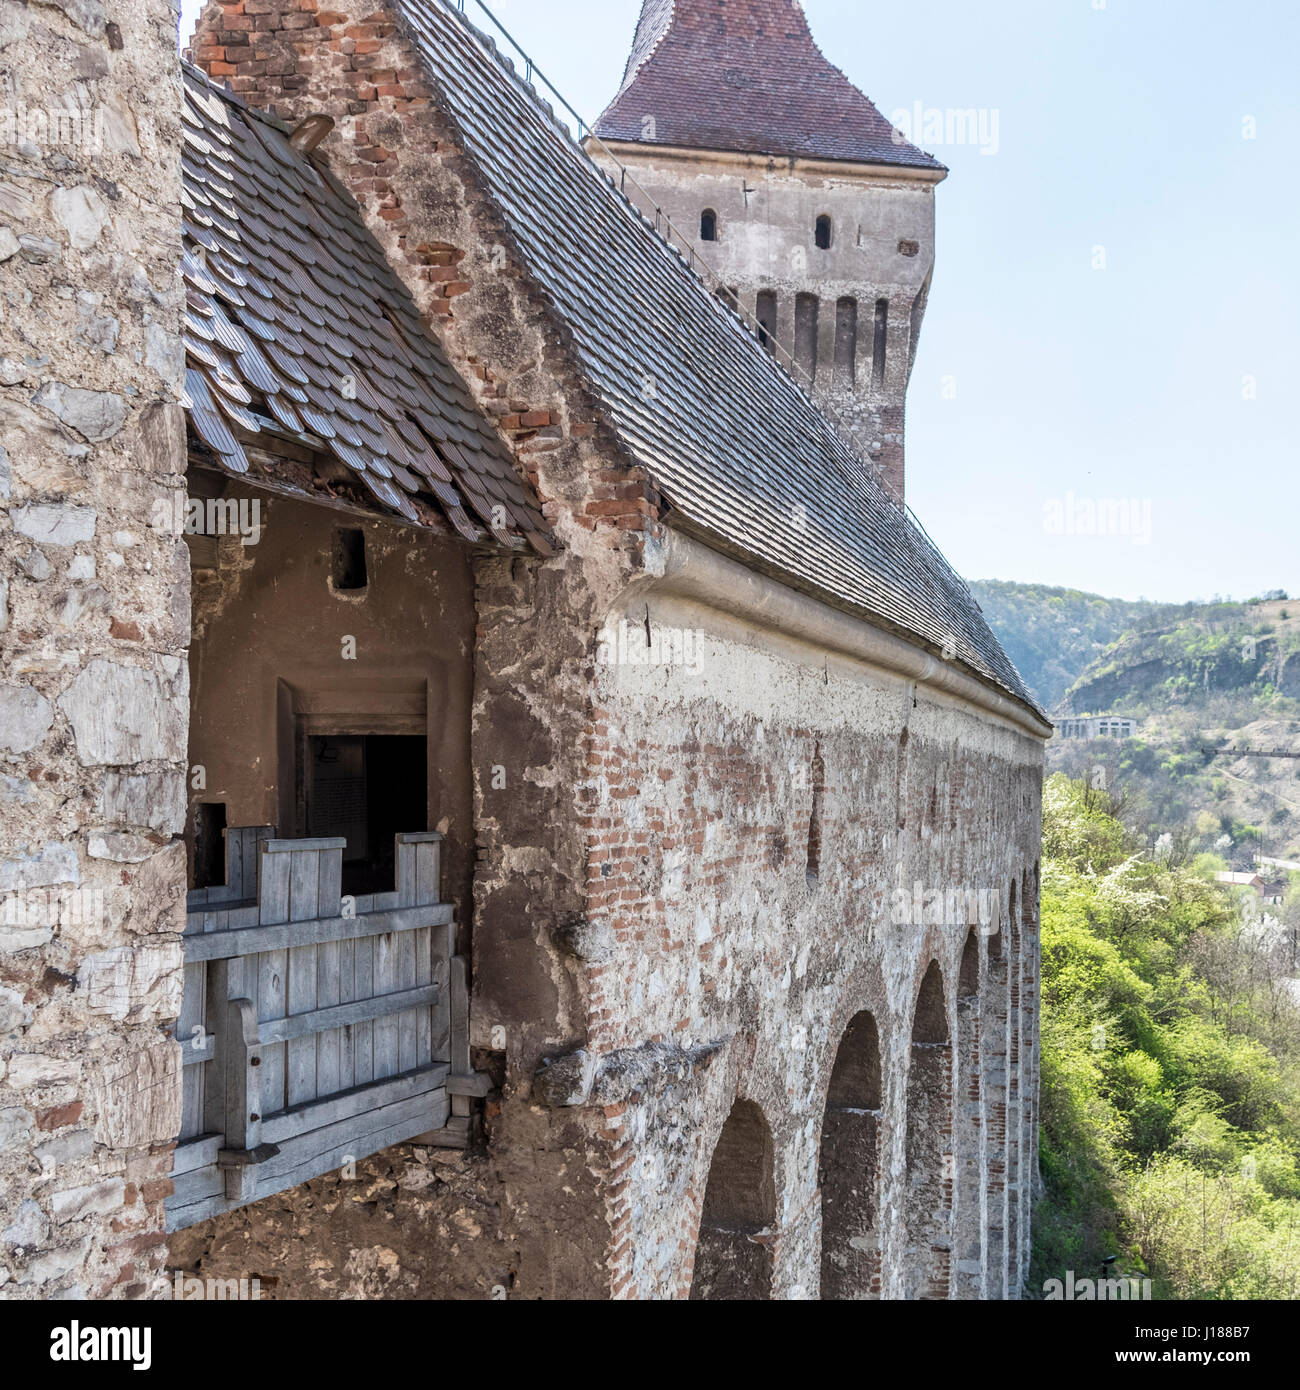 Castelul Corvinilor din Hunedoara / Castle of Corivins from Hunedoara - Romania Stock Photo